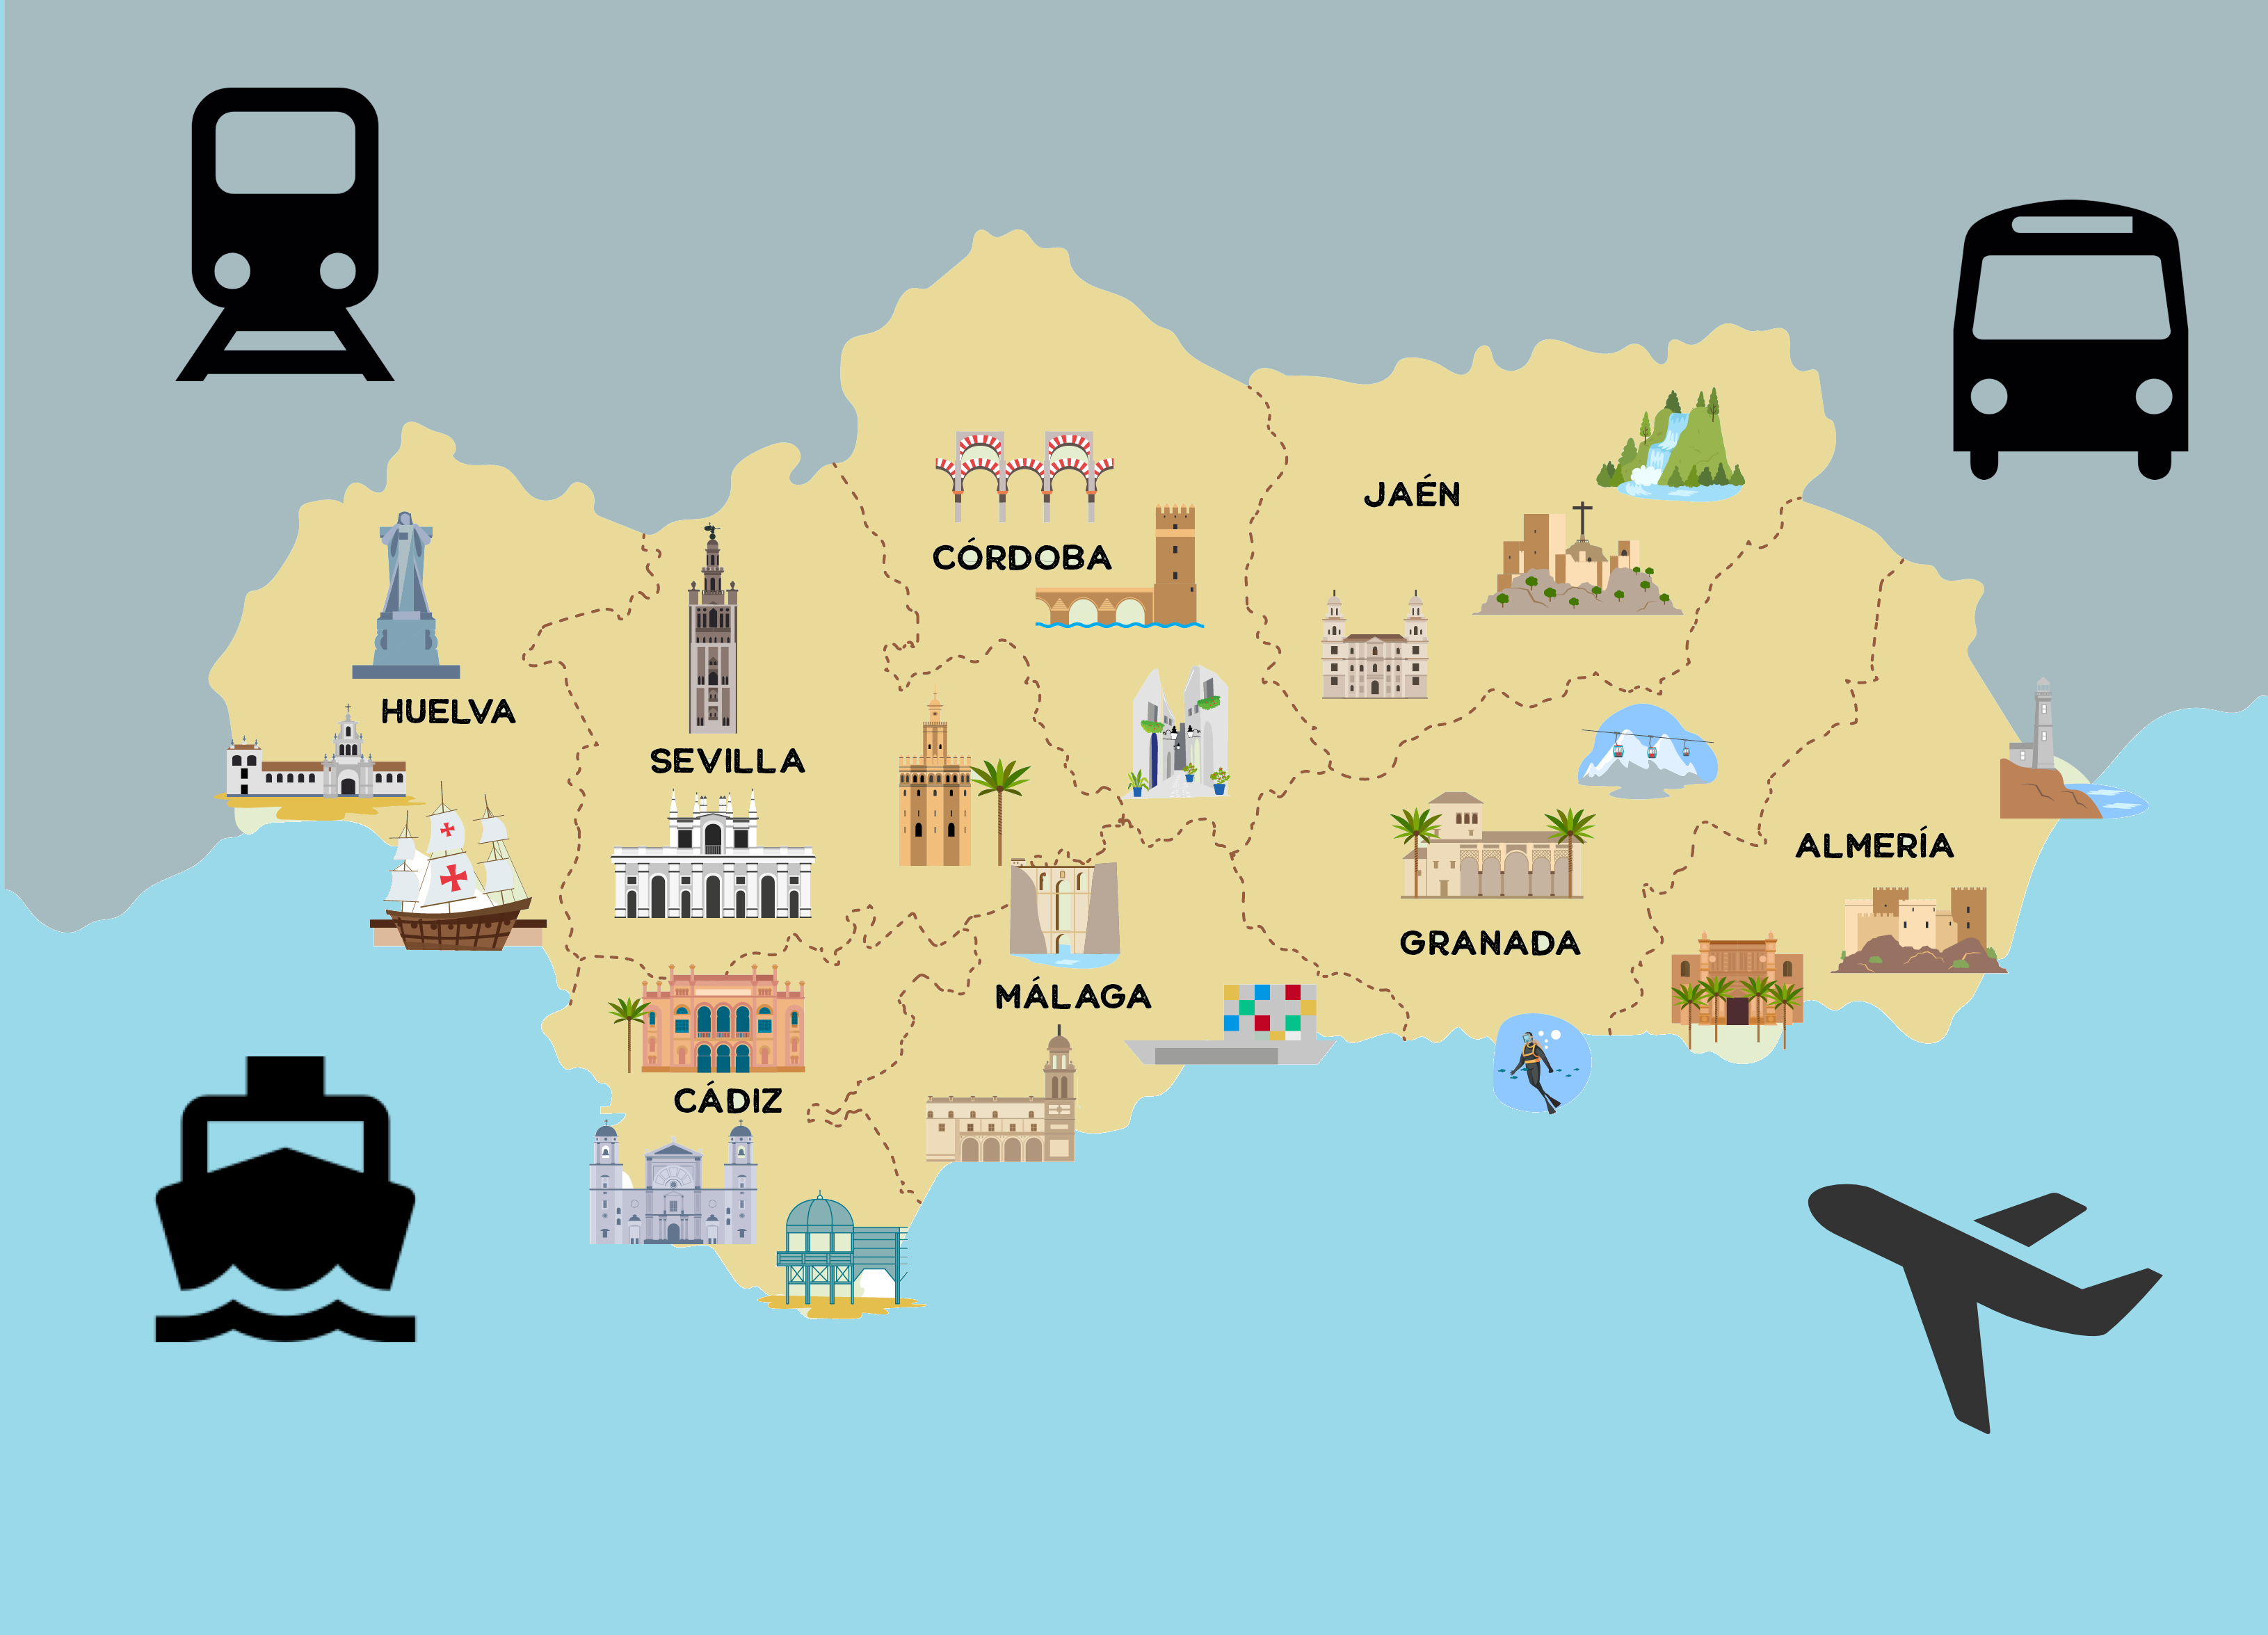 La imagen muestra un mapa de Andalucí con los sitios mas importantes para visitar y varios medios de transporte como bus, avión, tren y barco, así como el logo de Andalucía